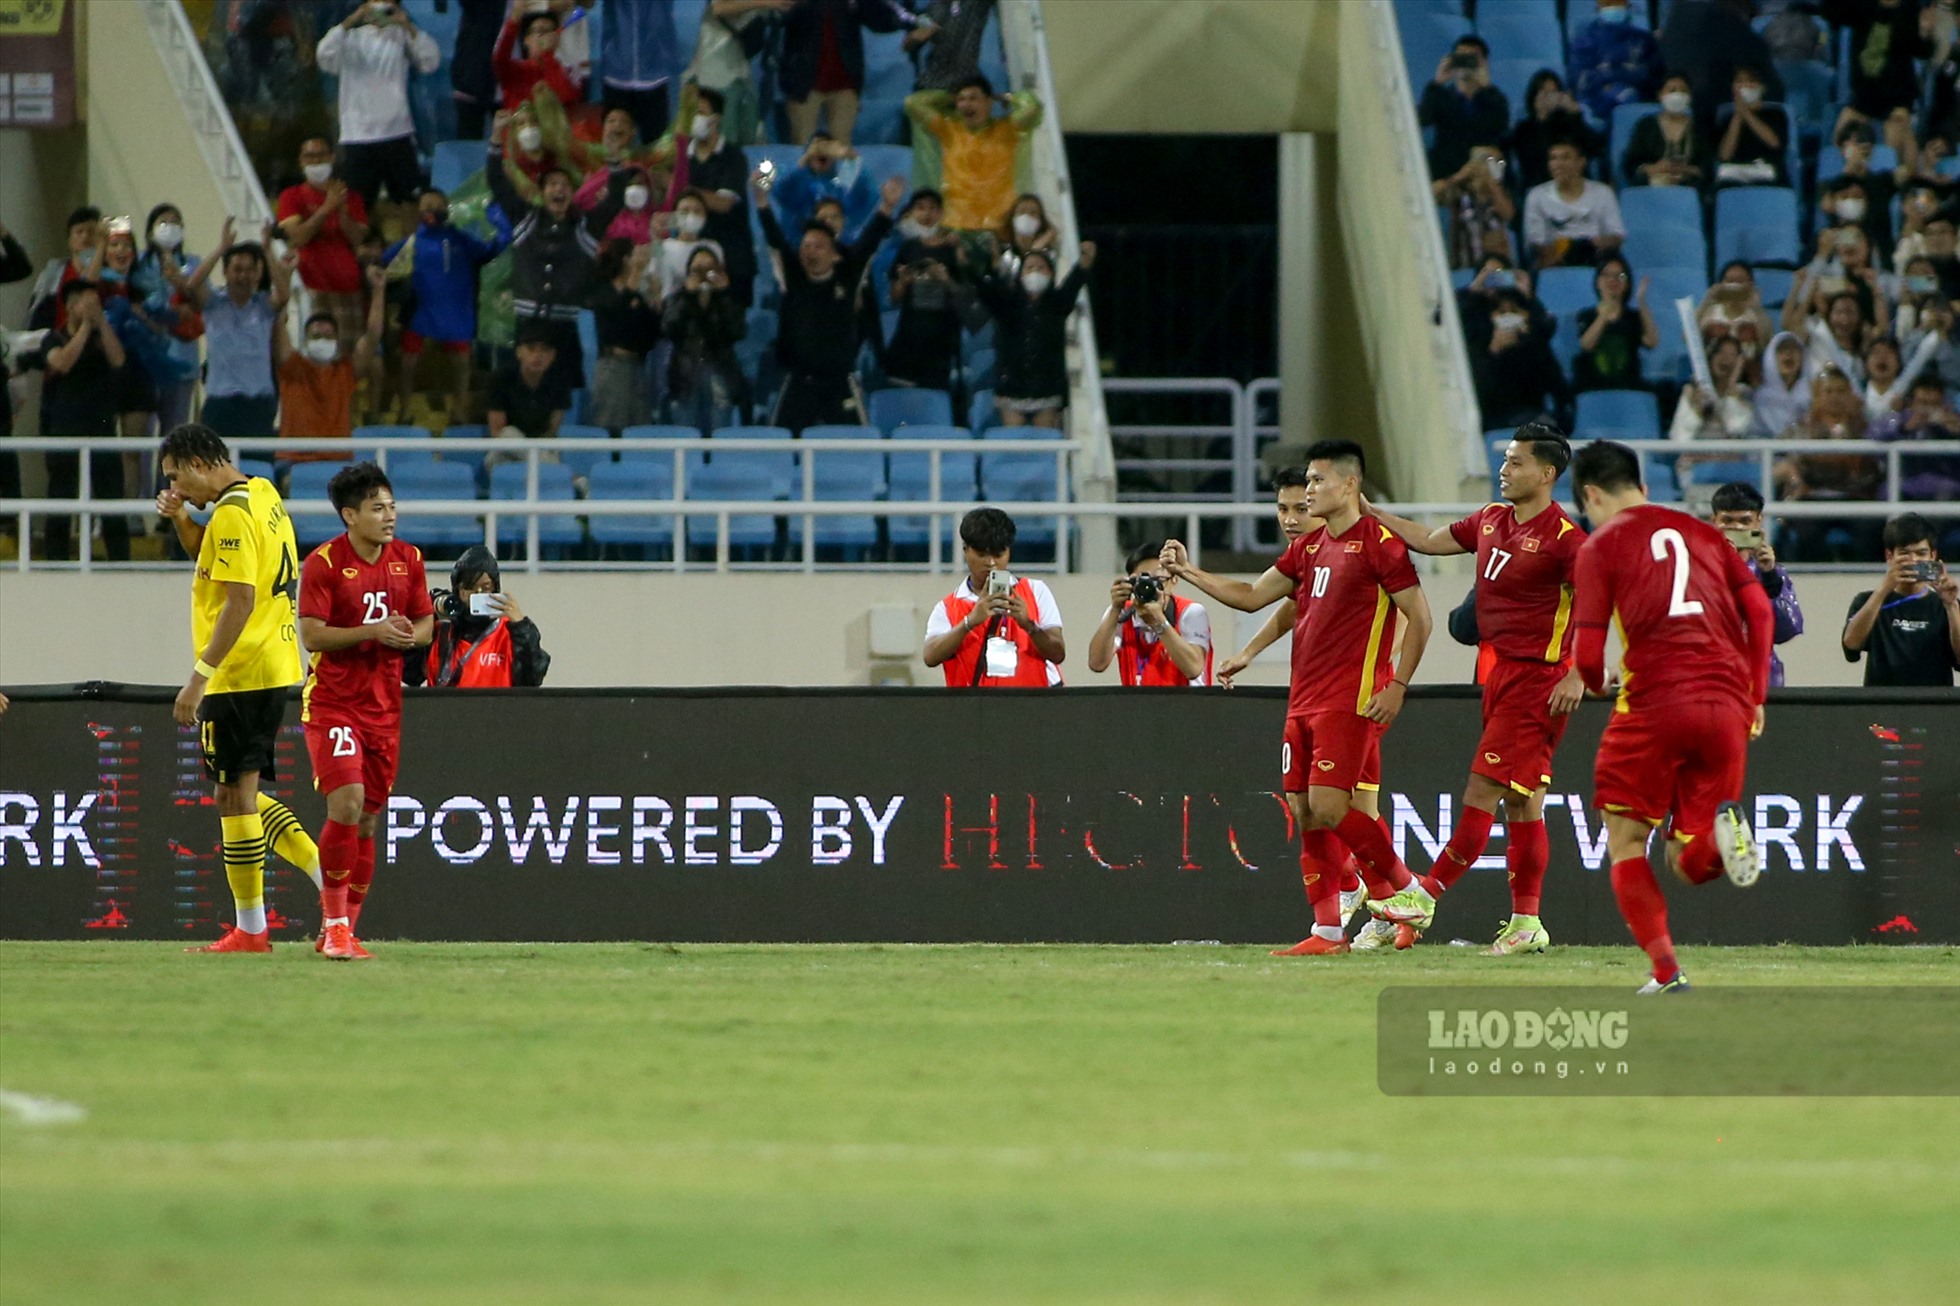 Cùng với bàn thắng của Tuấn Hải trên chấm 11m, tuyển Việt Nam đã đánh bại Dortmund với tỷ số 2-1.